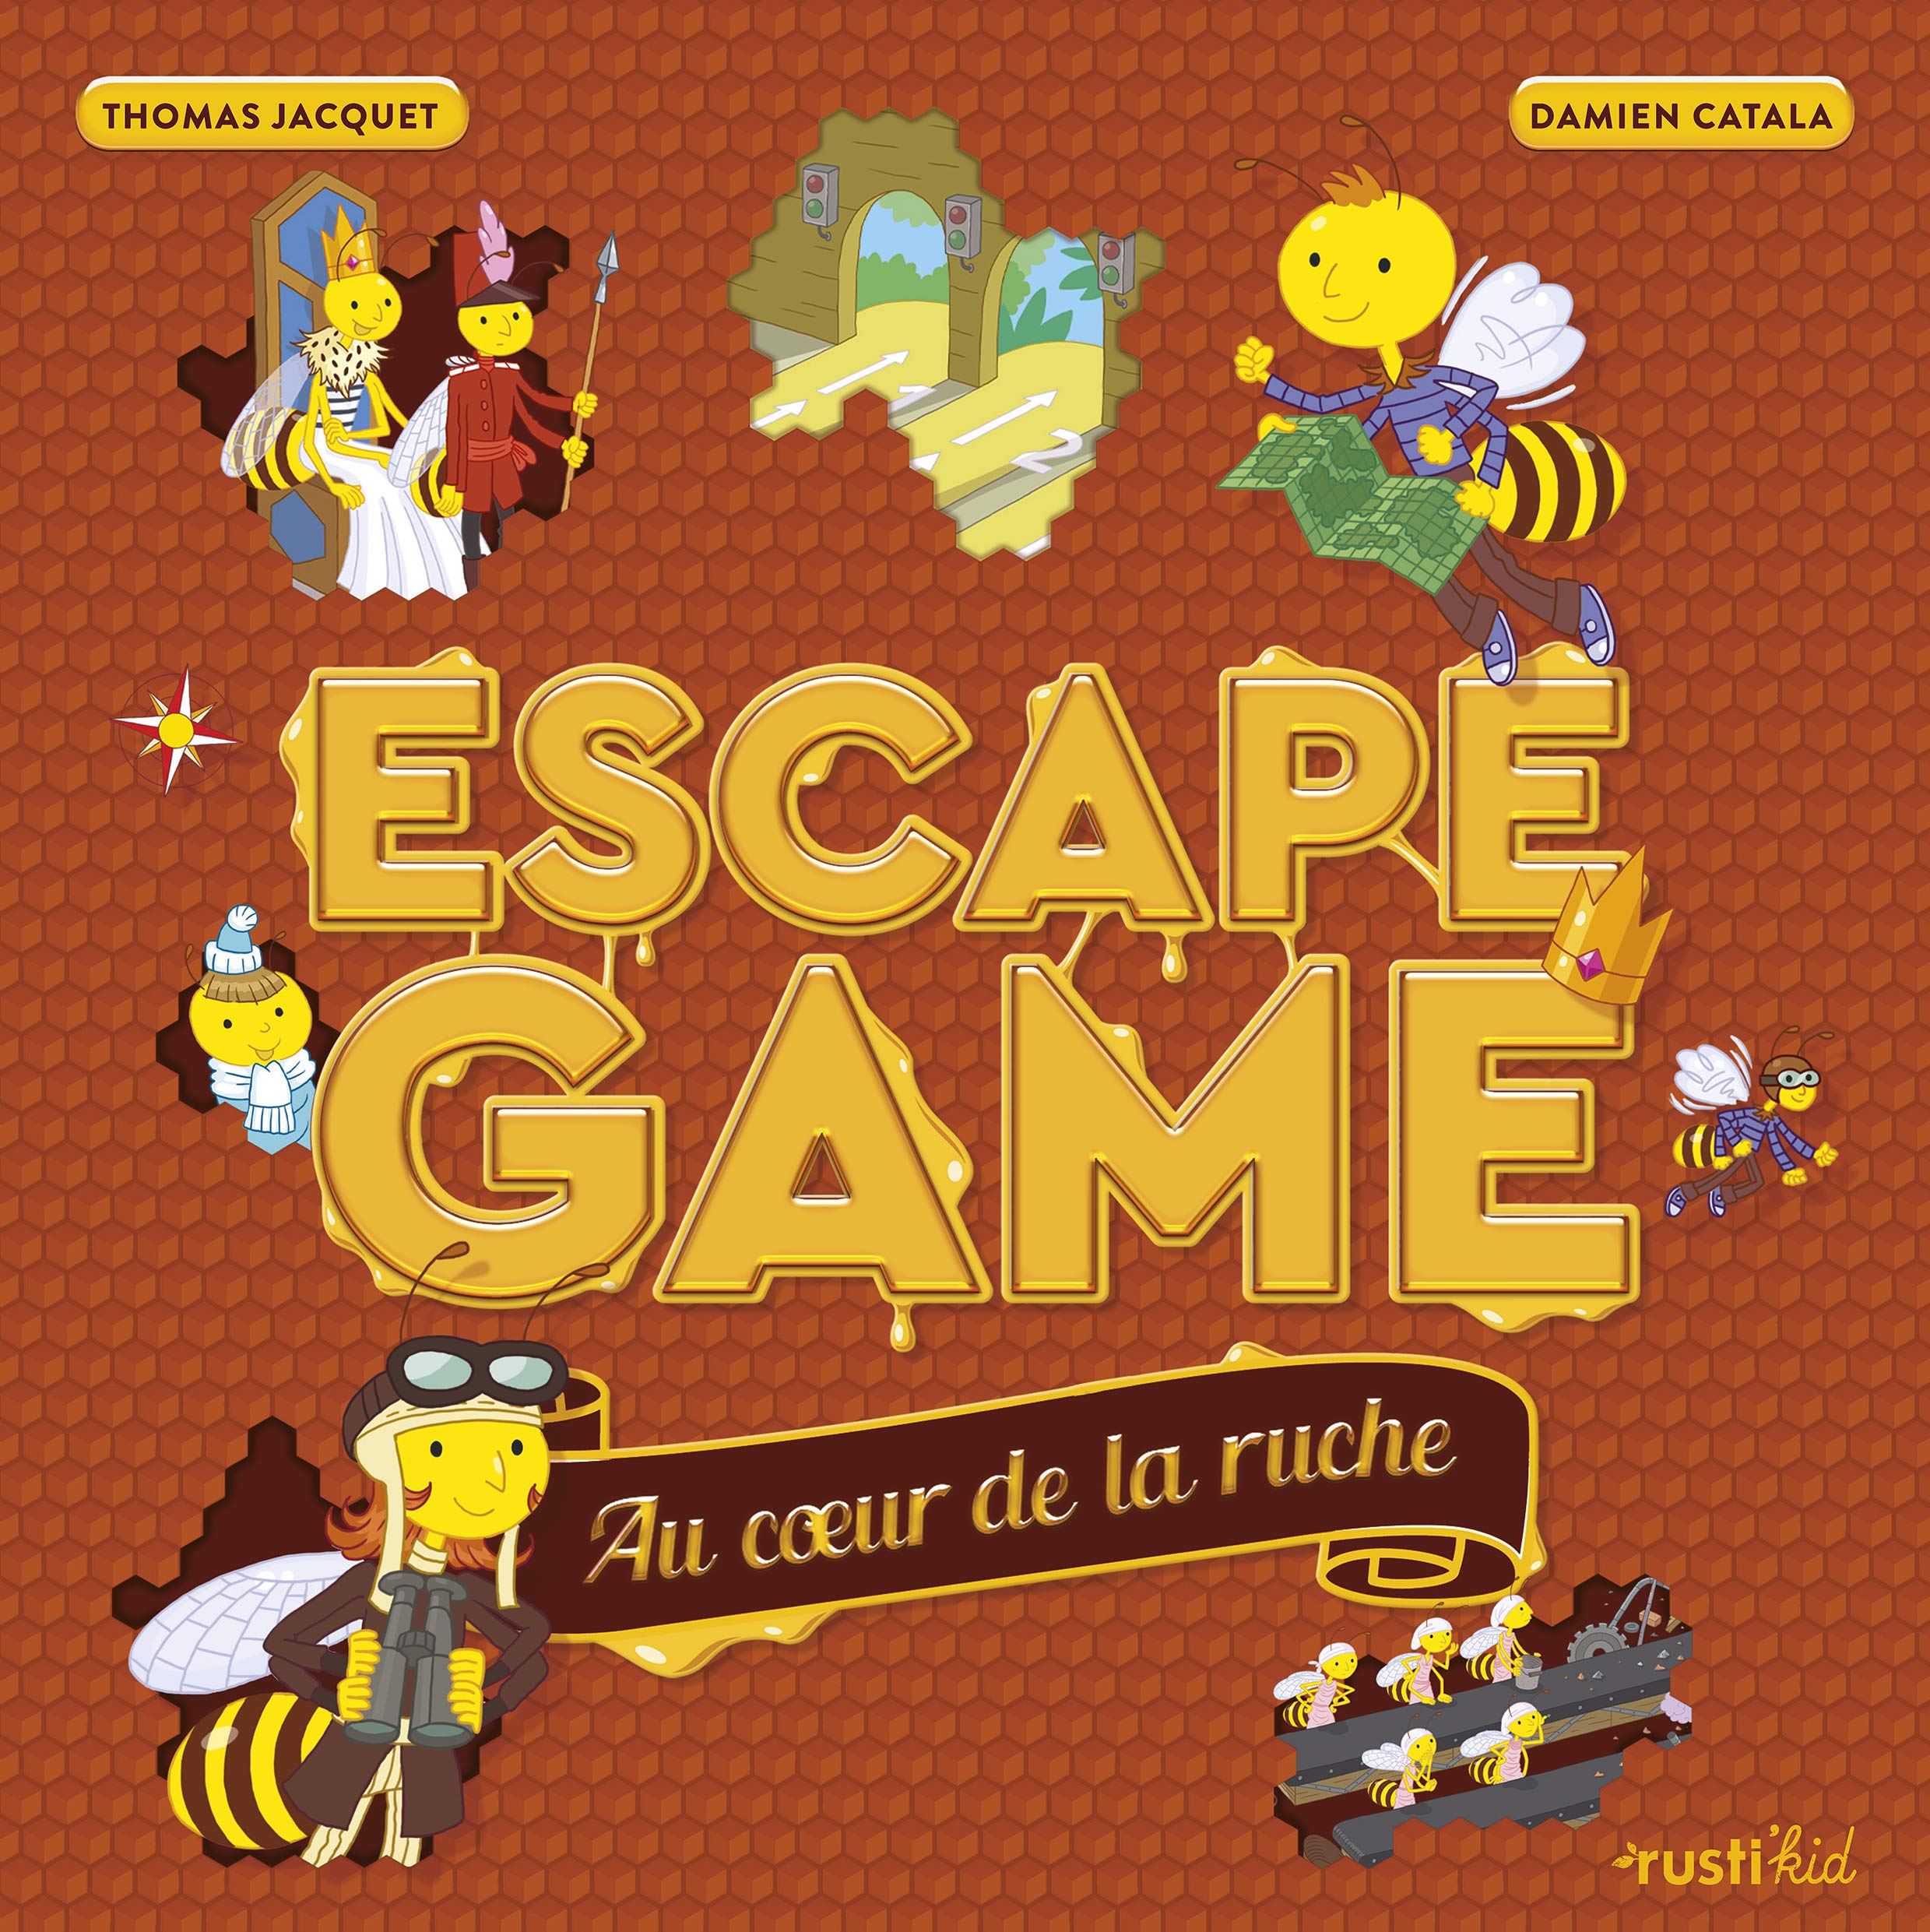 Au coeur de la ruche - Escape Game - Great Escape - Recto